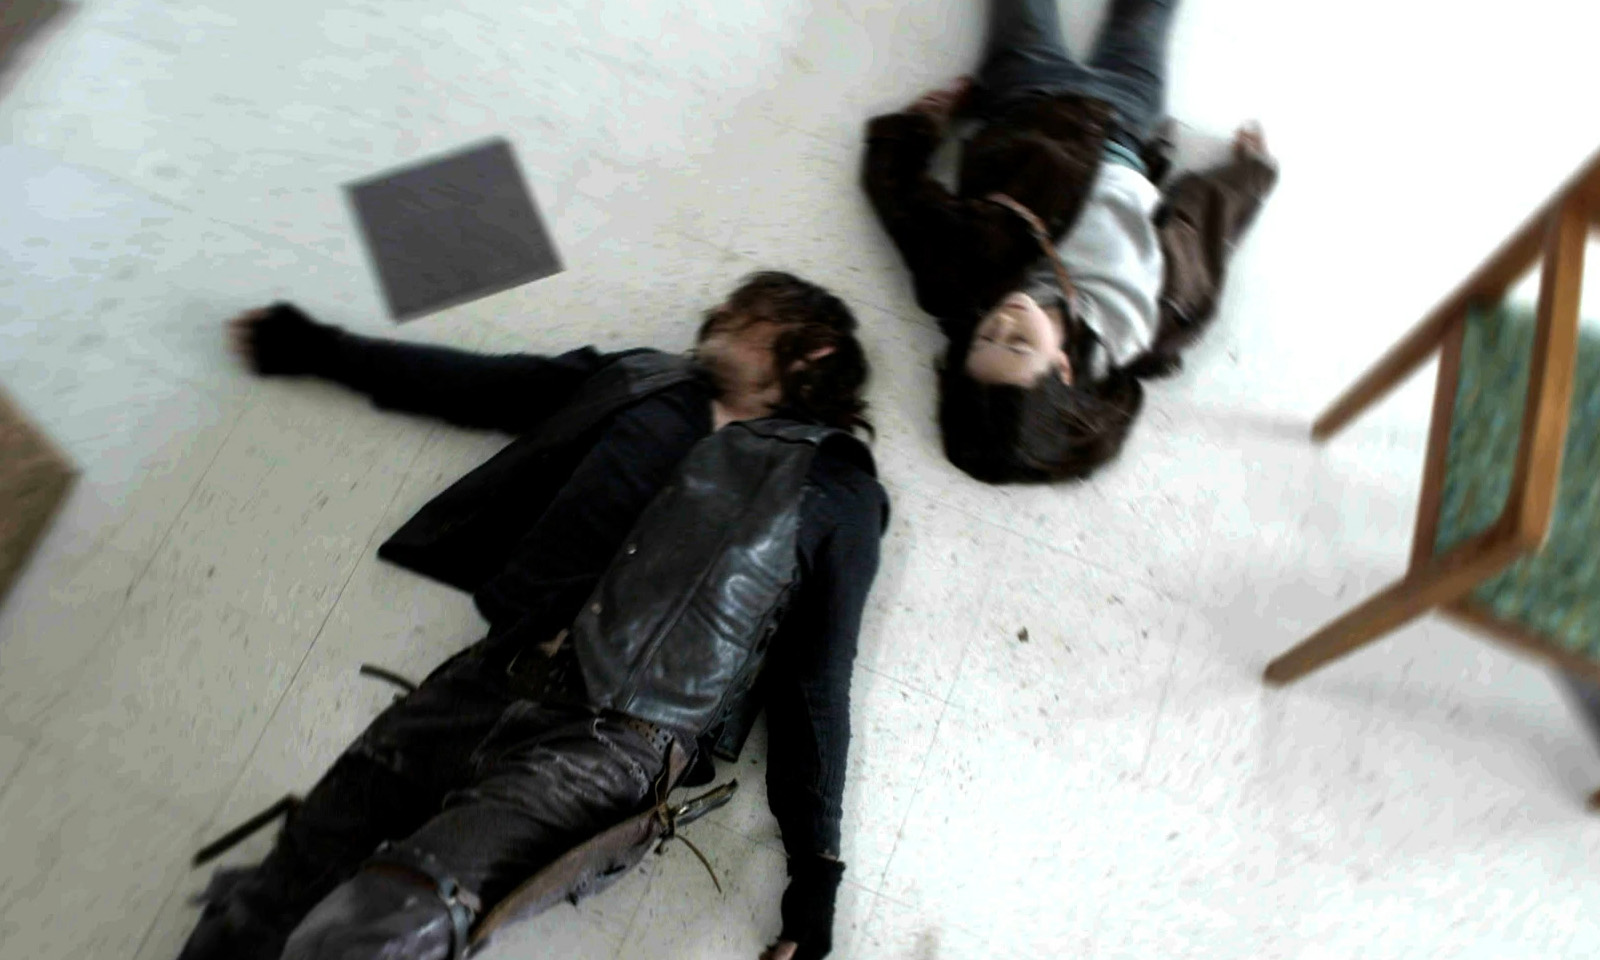 Daryl e Judith caídos no chão do hospital em cena do último episódio de The Walking Dead.